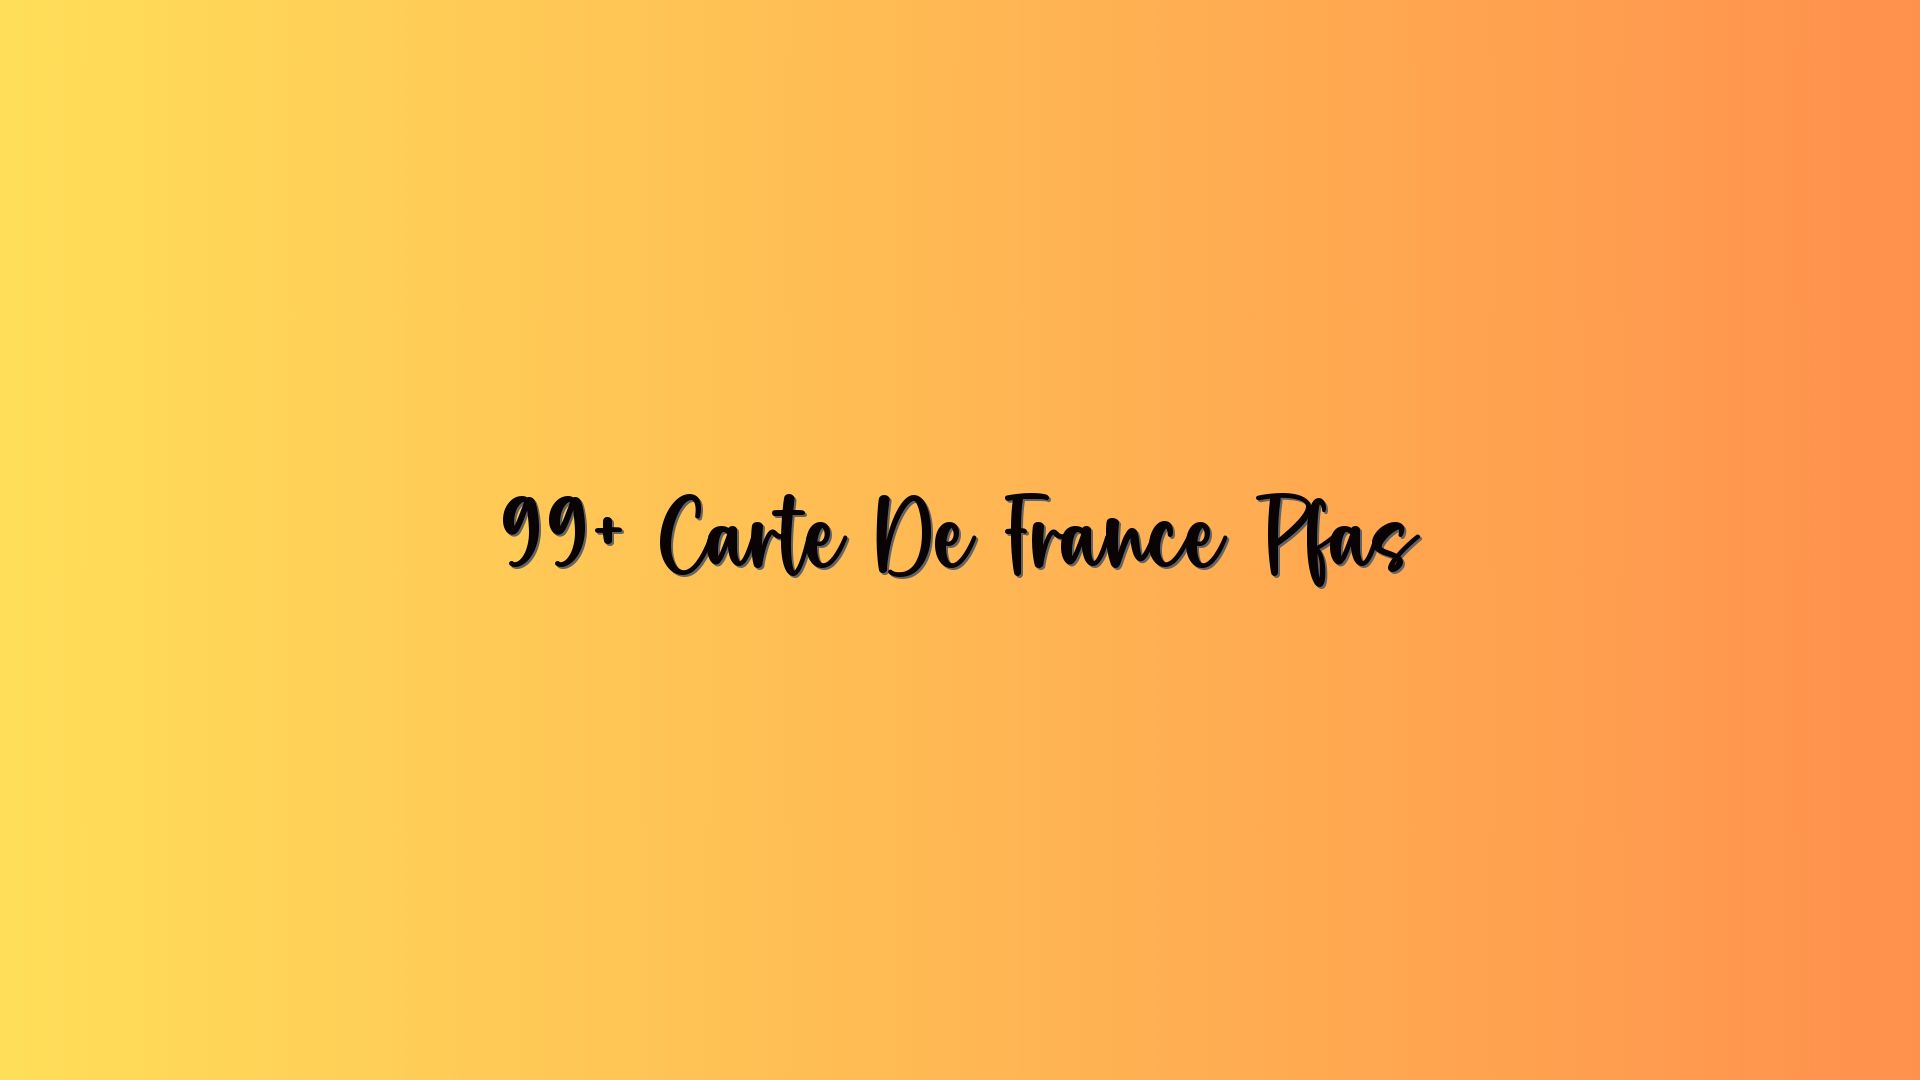 99+ Carte De France Pfas